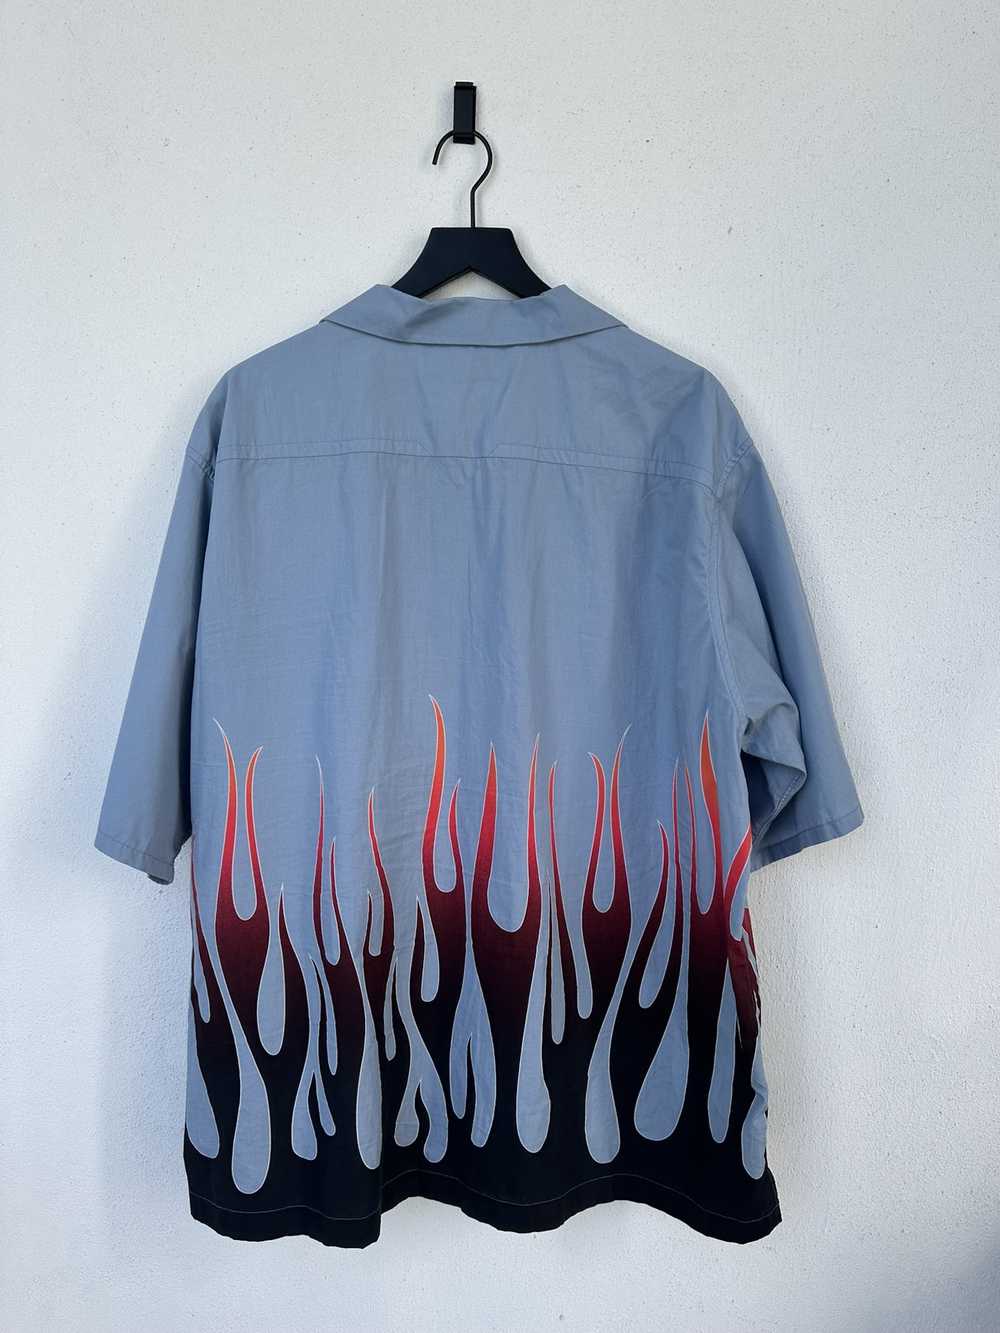 Kenzo Kenzo Flame Print Shirt - image 4